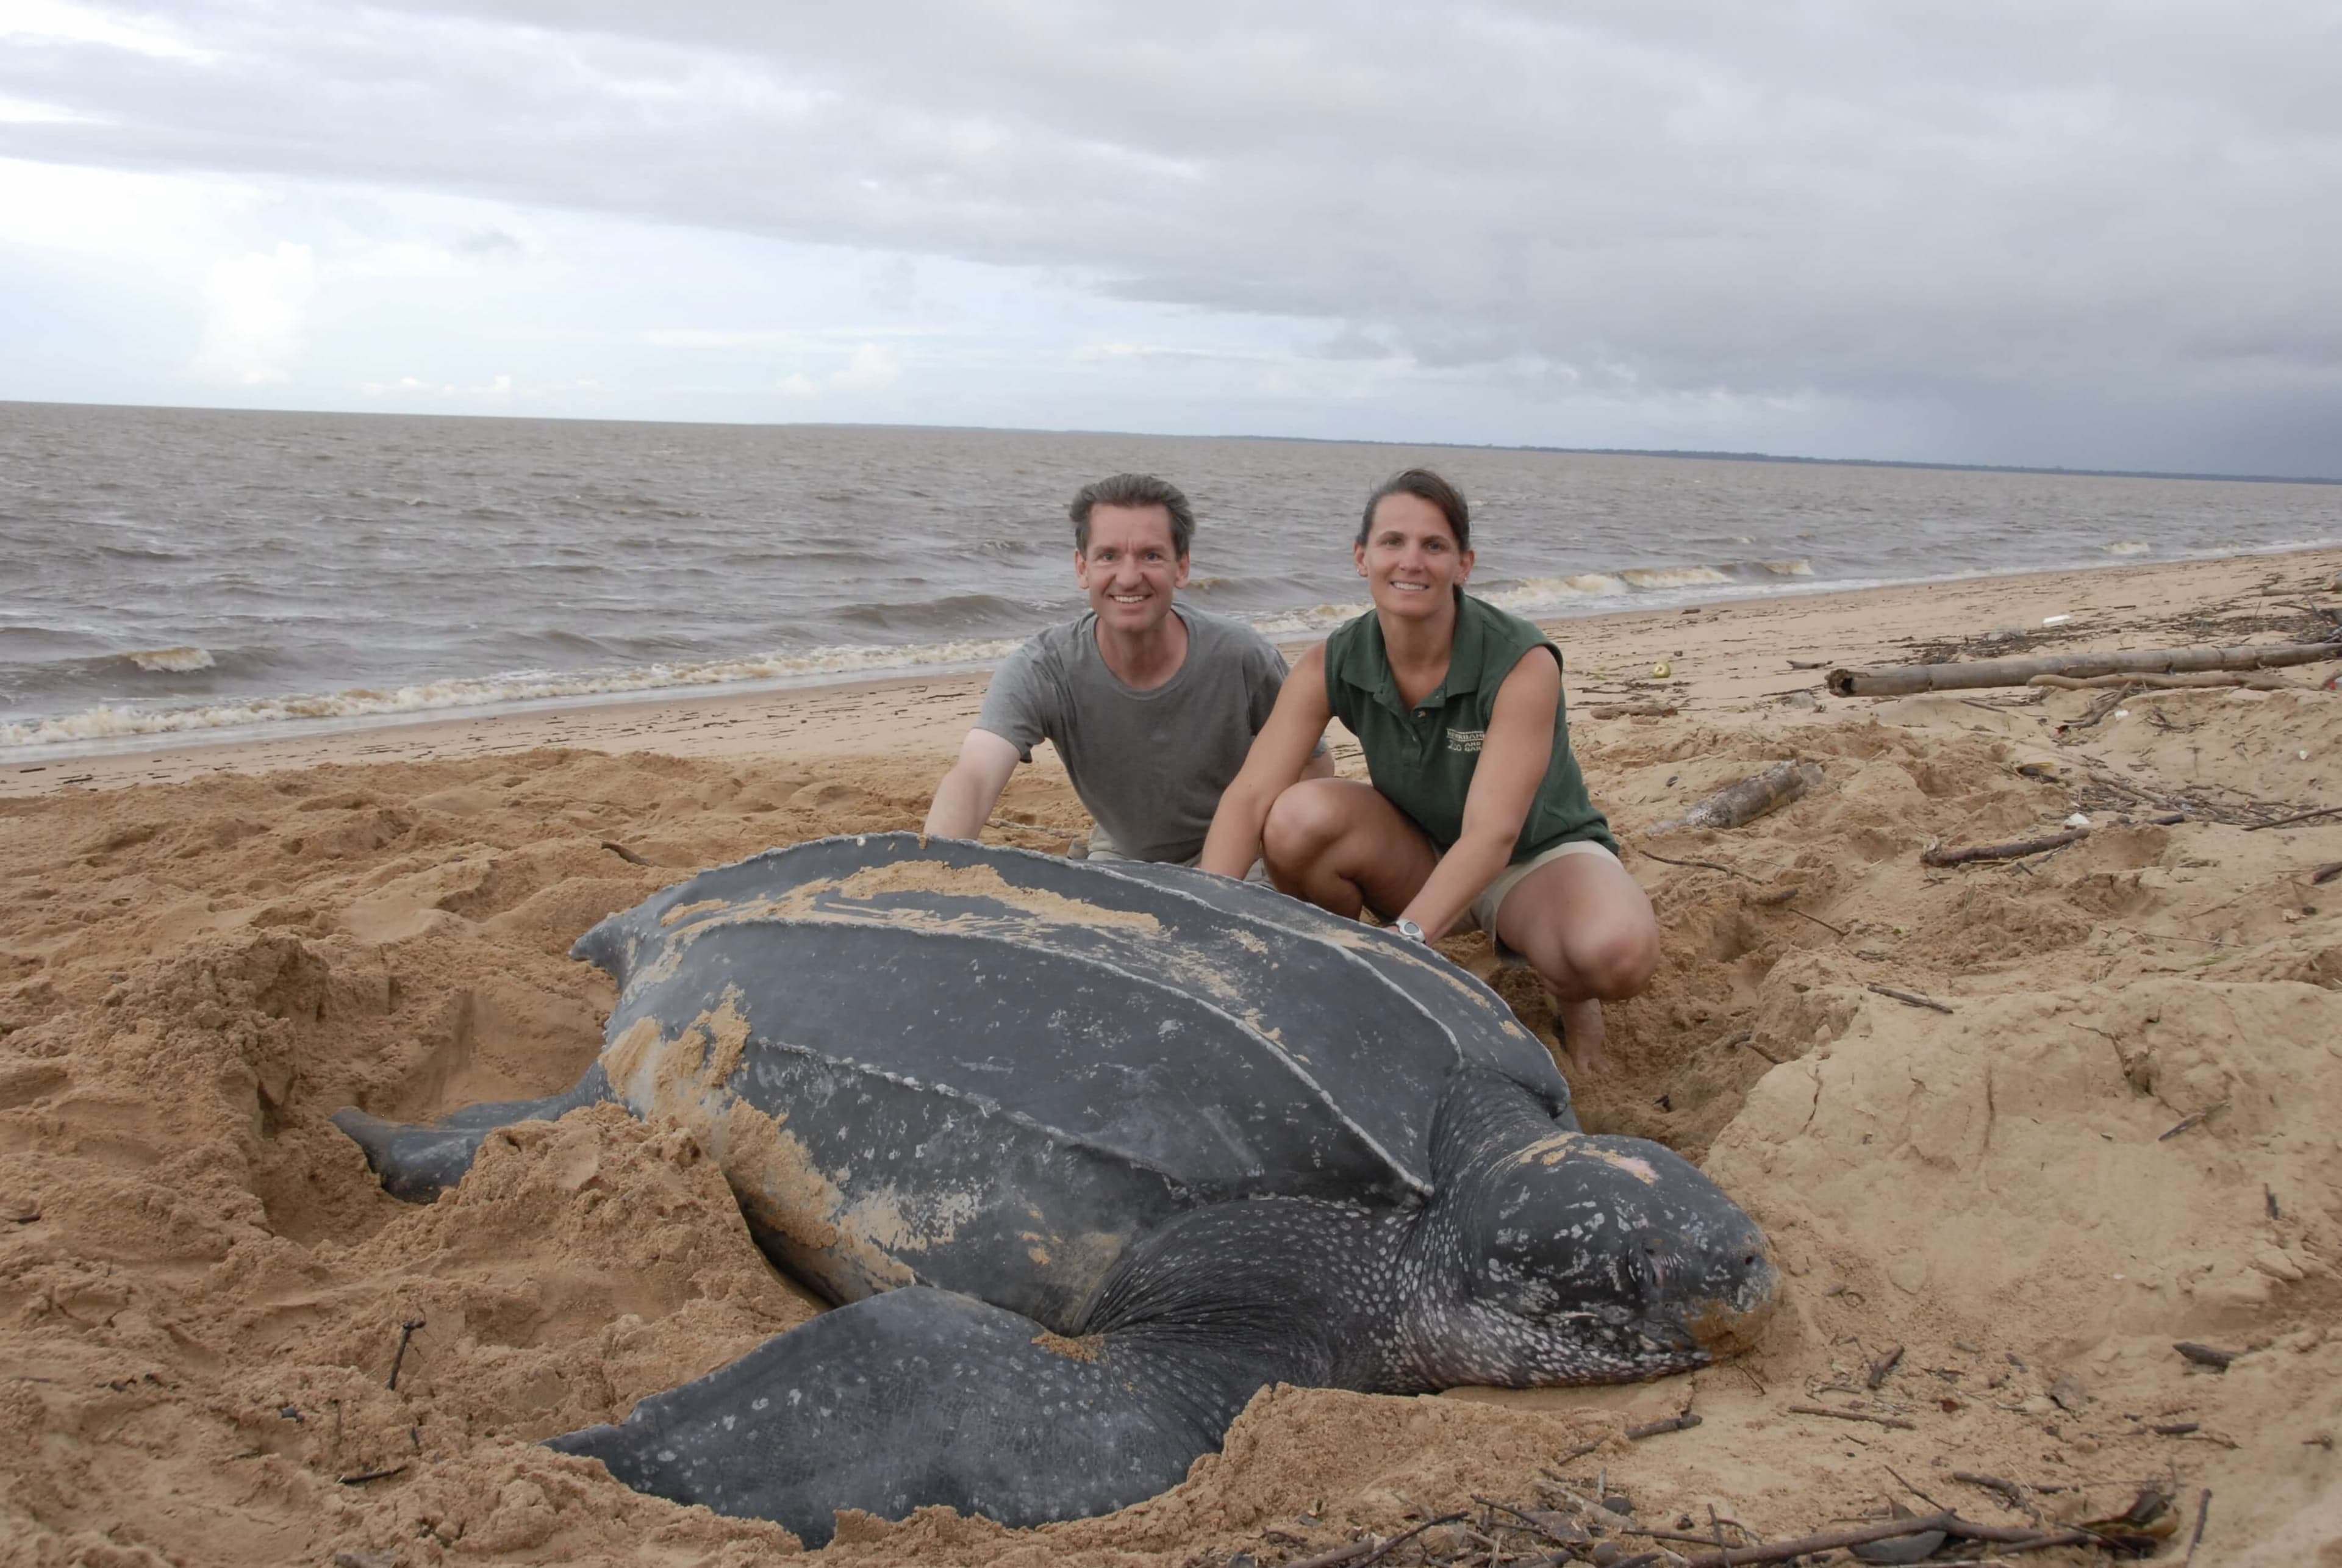 Пара наблюдает за большой черепахой на пляже Рекава, Шри-Ланка.